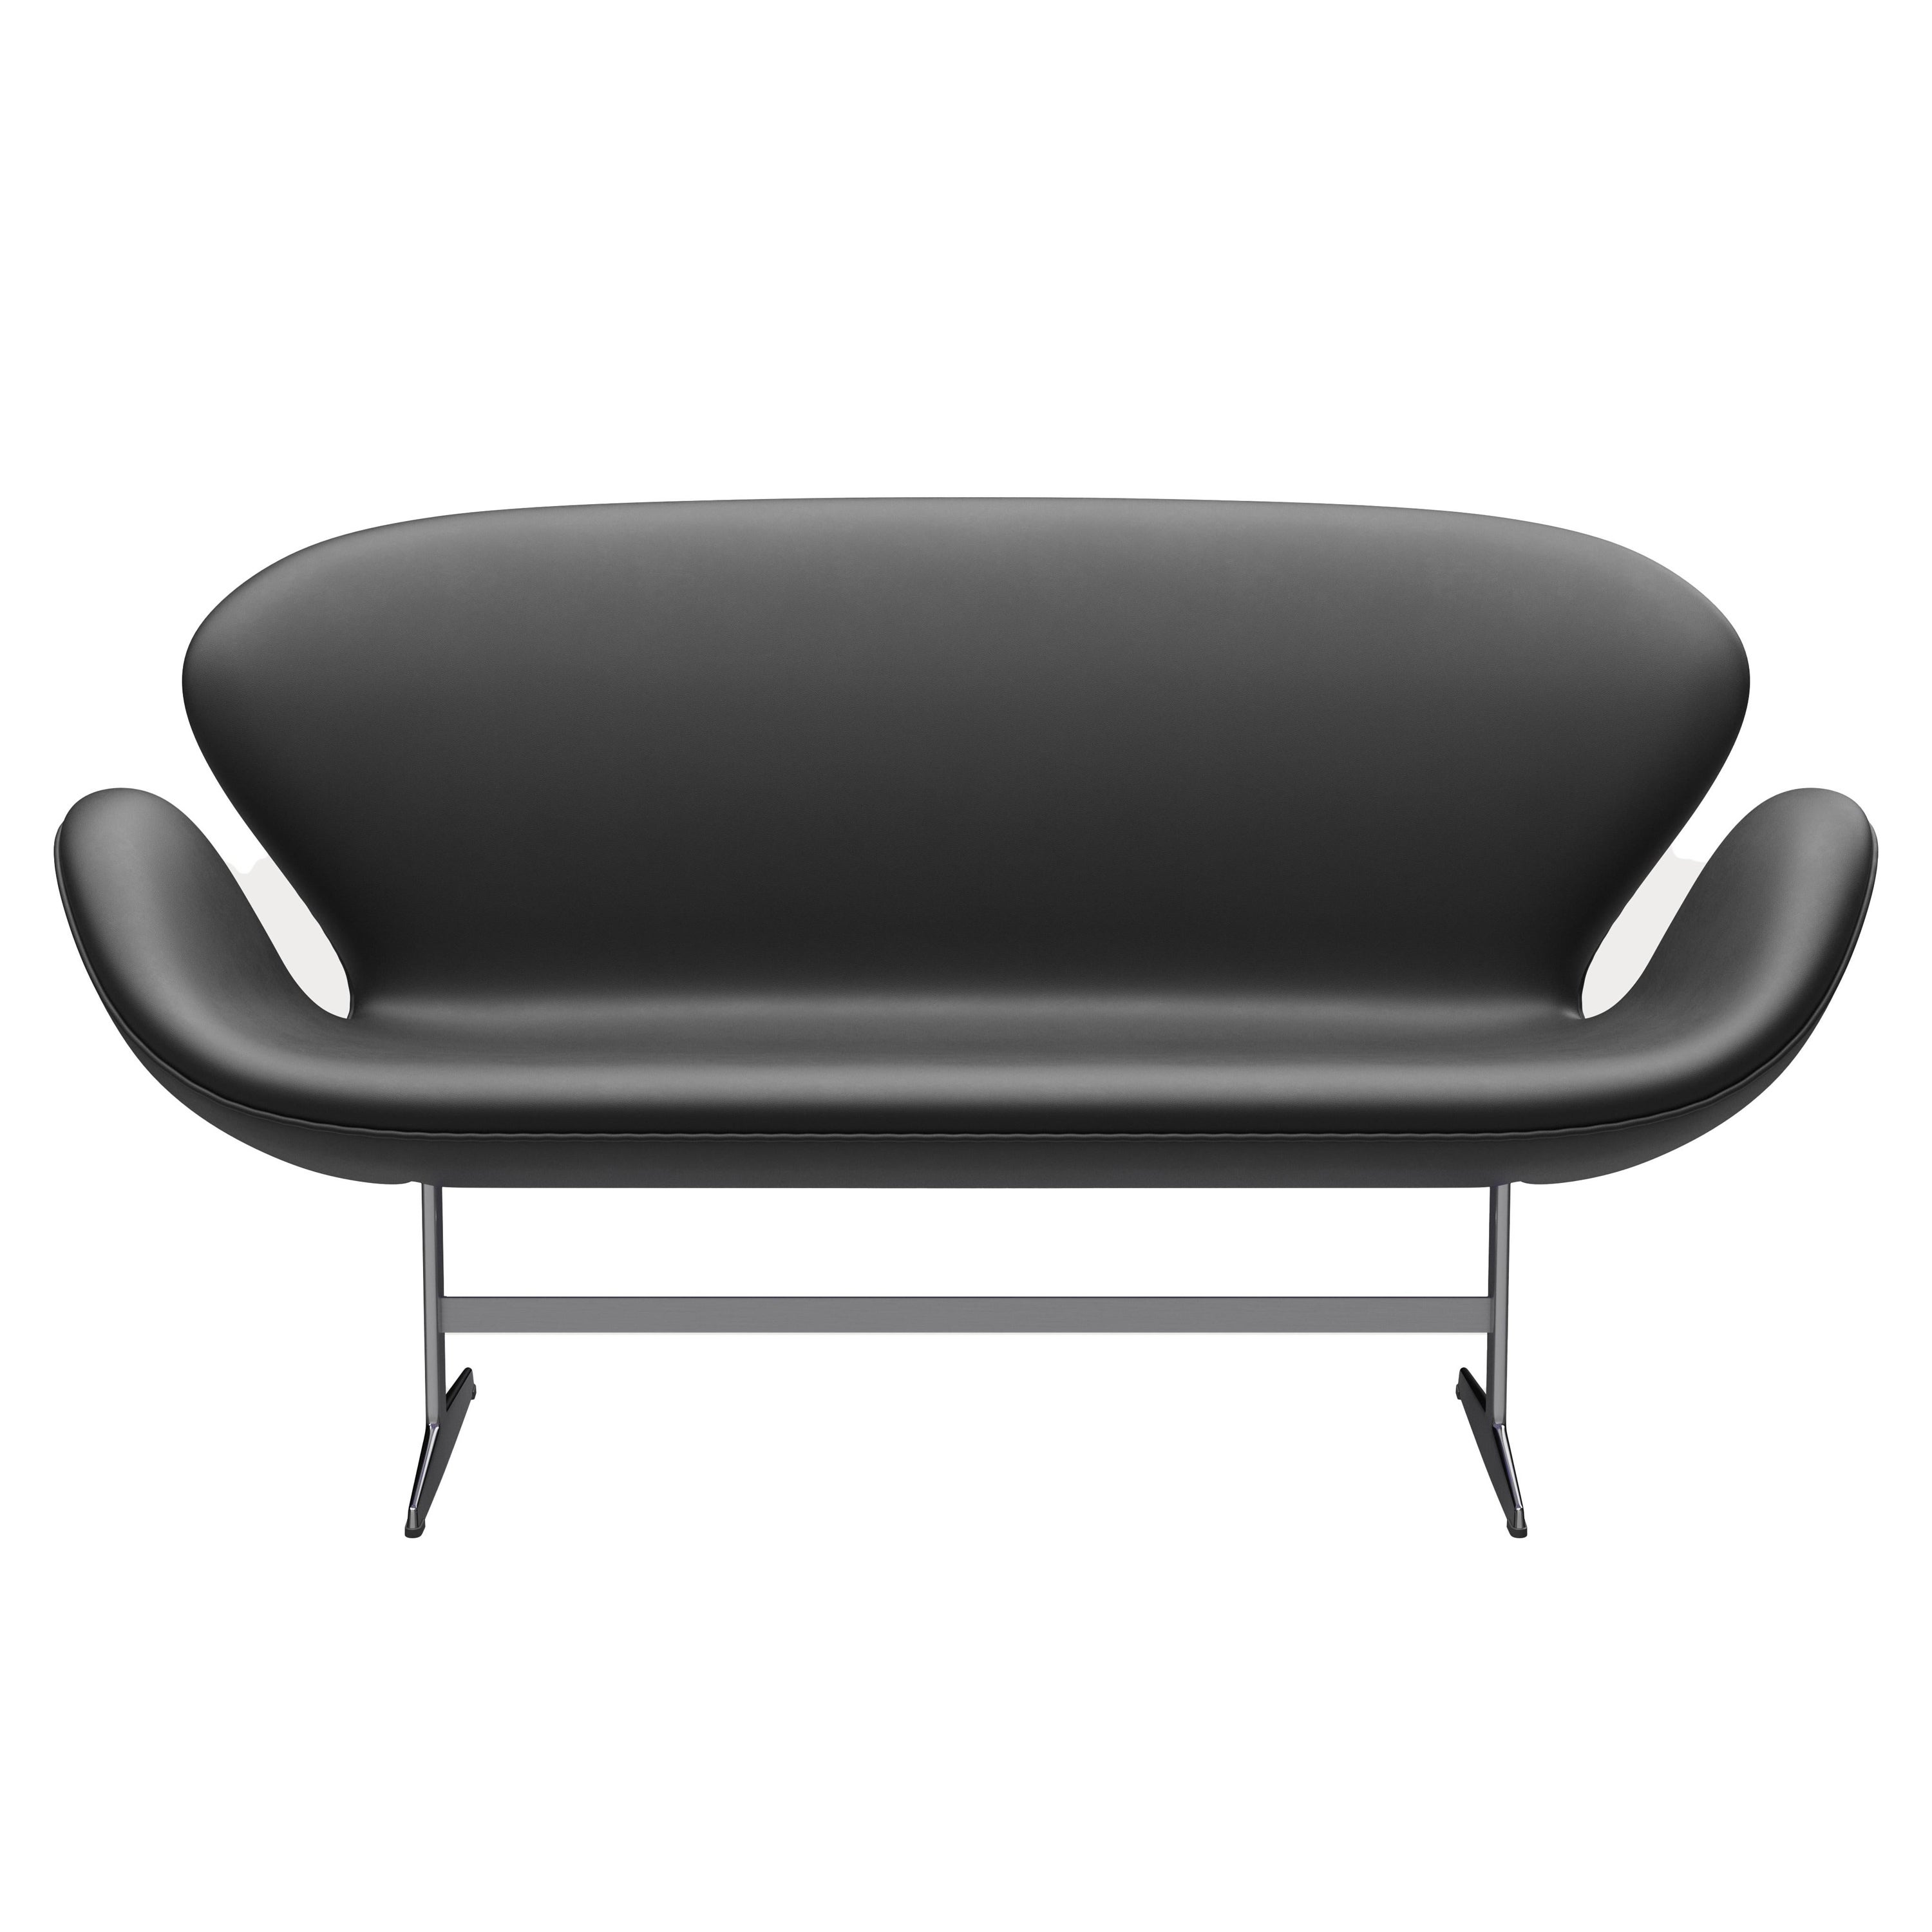 Arne Jacobsen 'Swan' Sofa for Fritz Hansen in Leather Upholstery (Cat. 3) For Sale